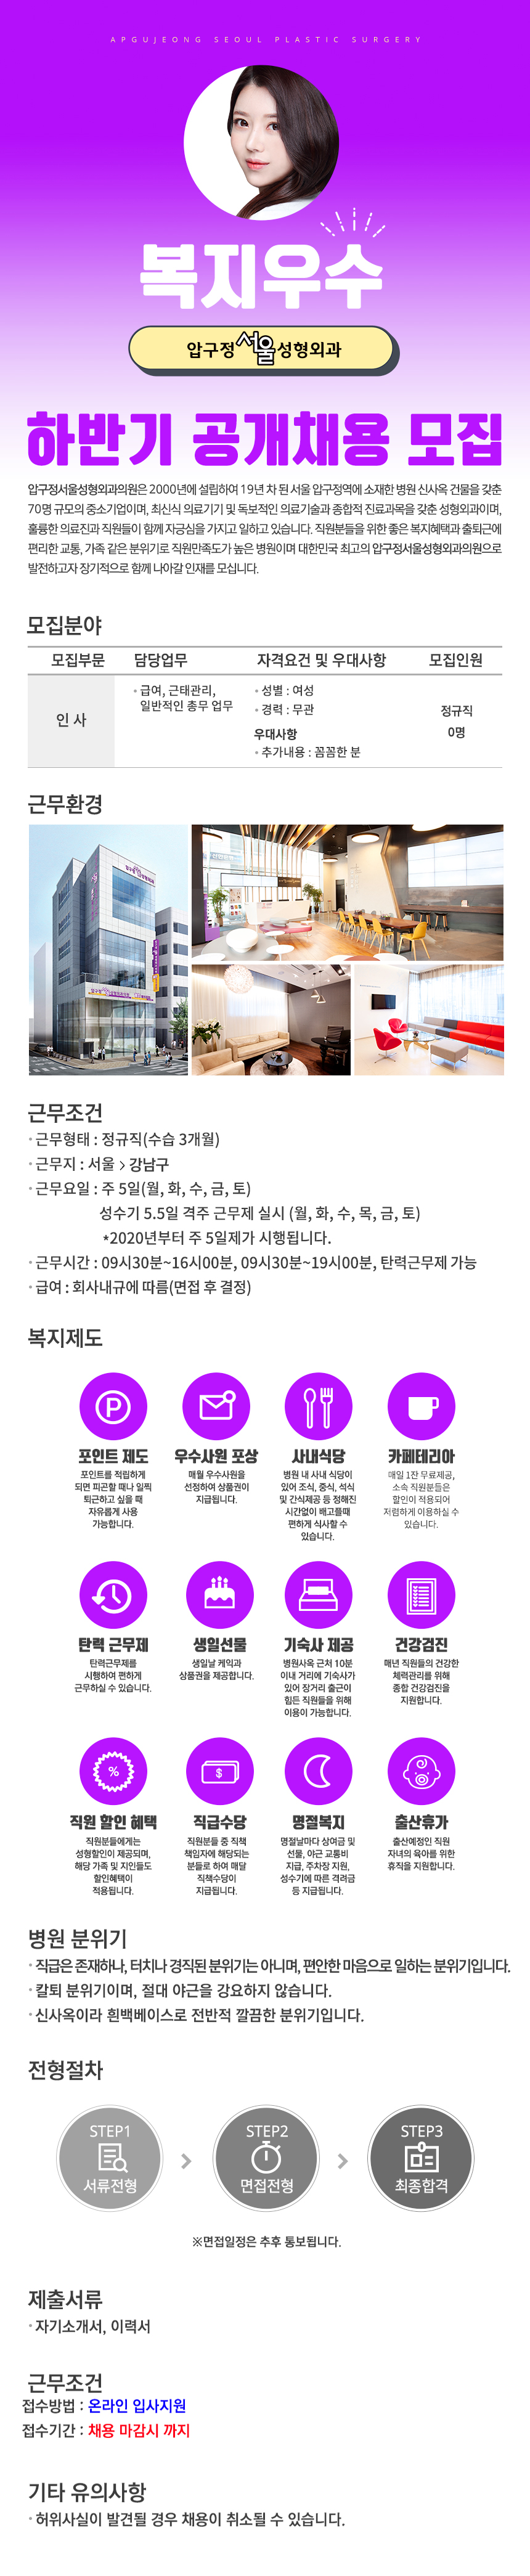 [복지우수]압구정서울성형외과 인사팀 채용모집